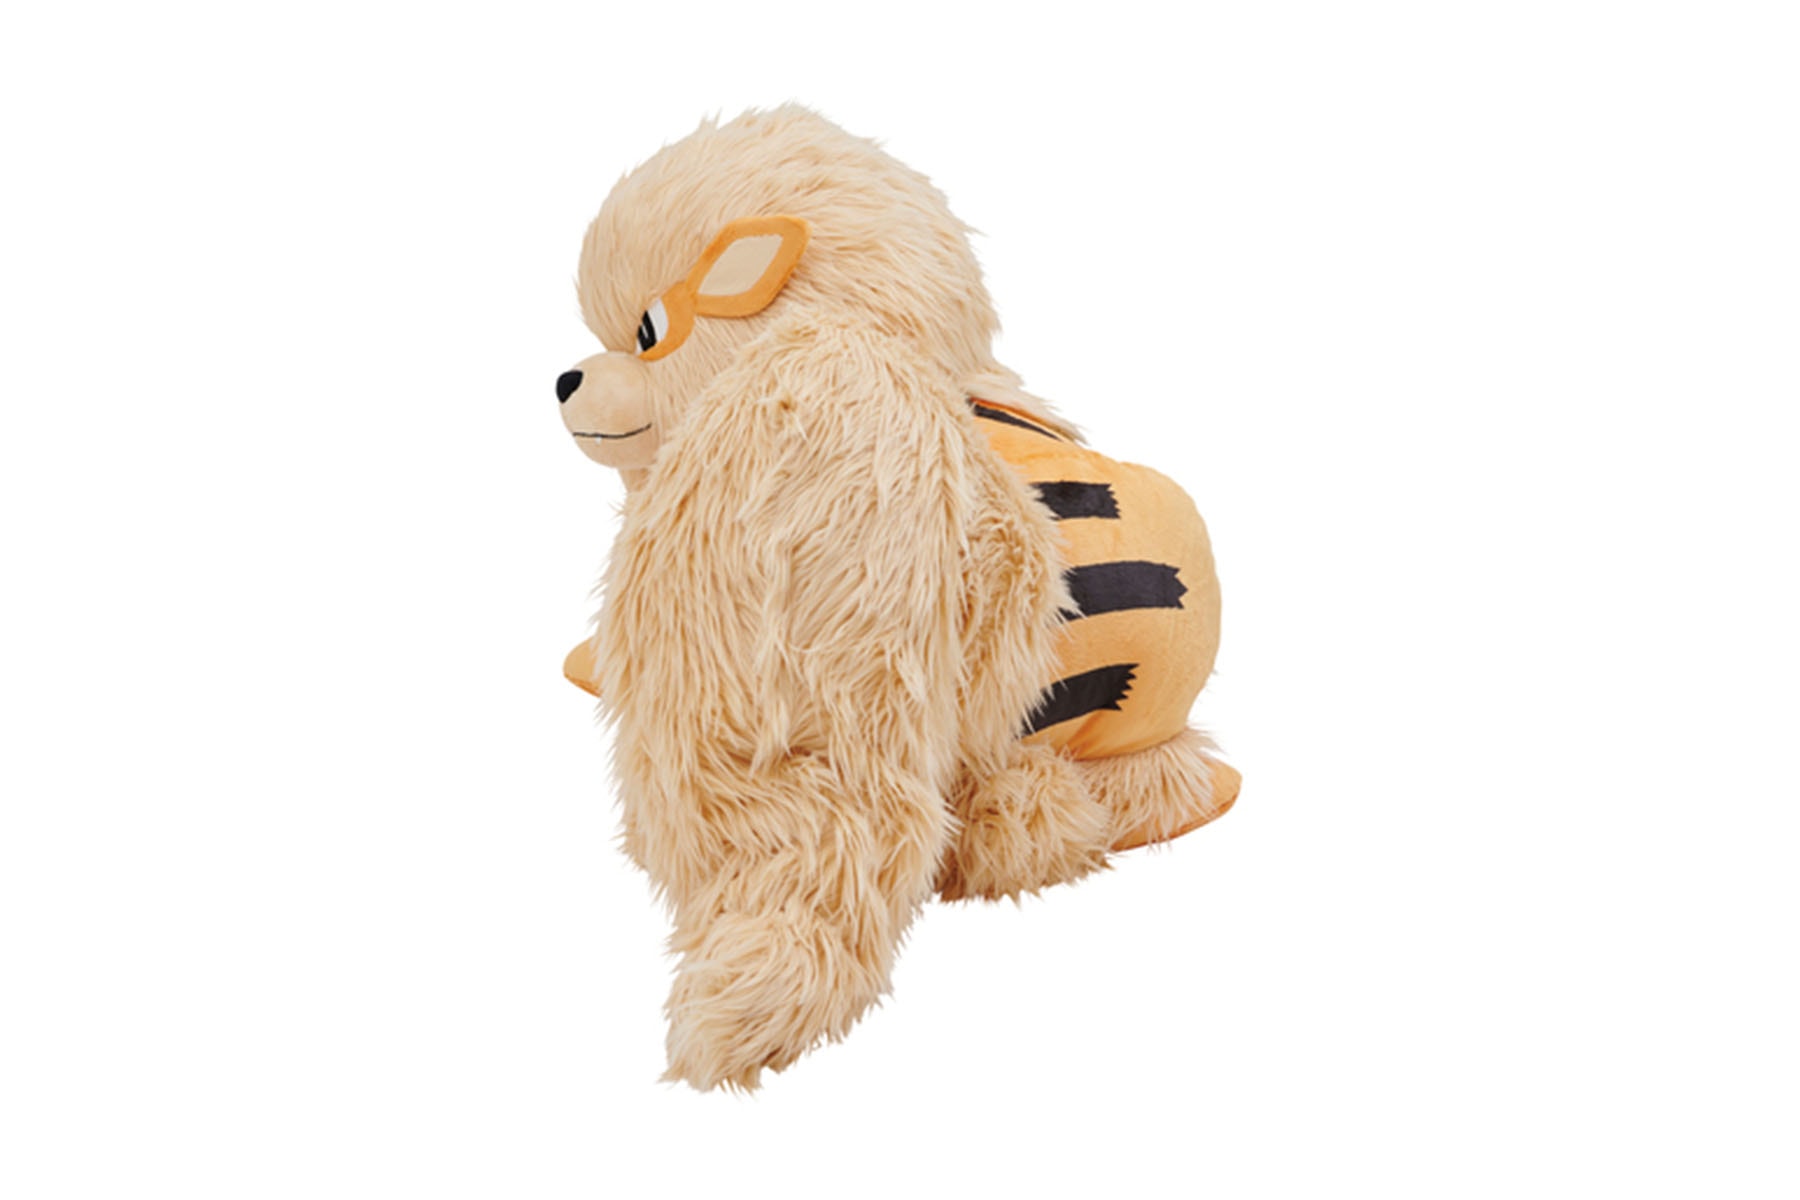 日本 Pokémon Center ONLINE 推出「風速狗」1/2 比例造型布偶